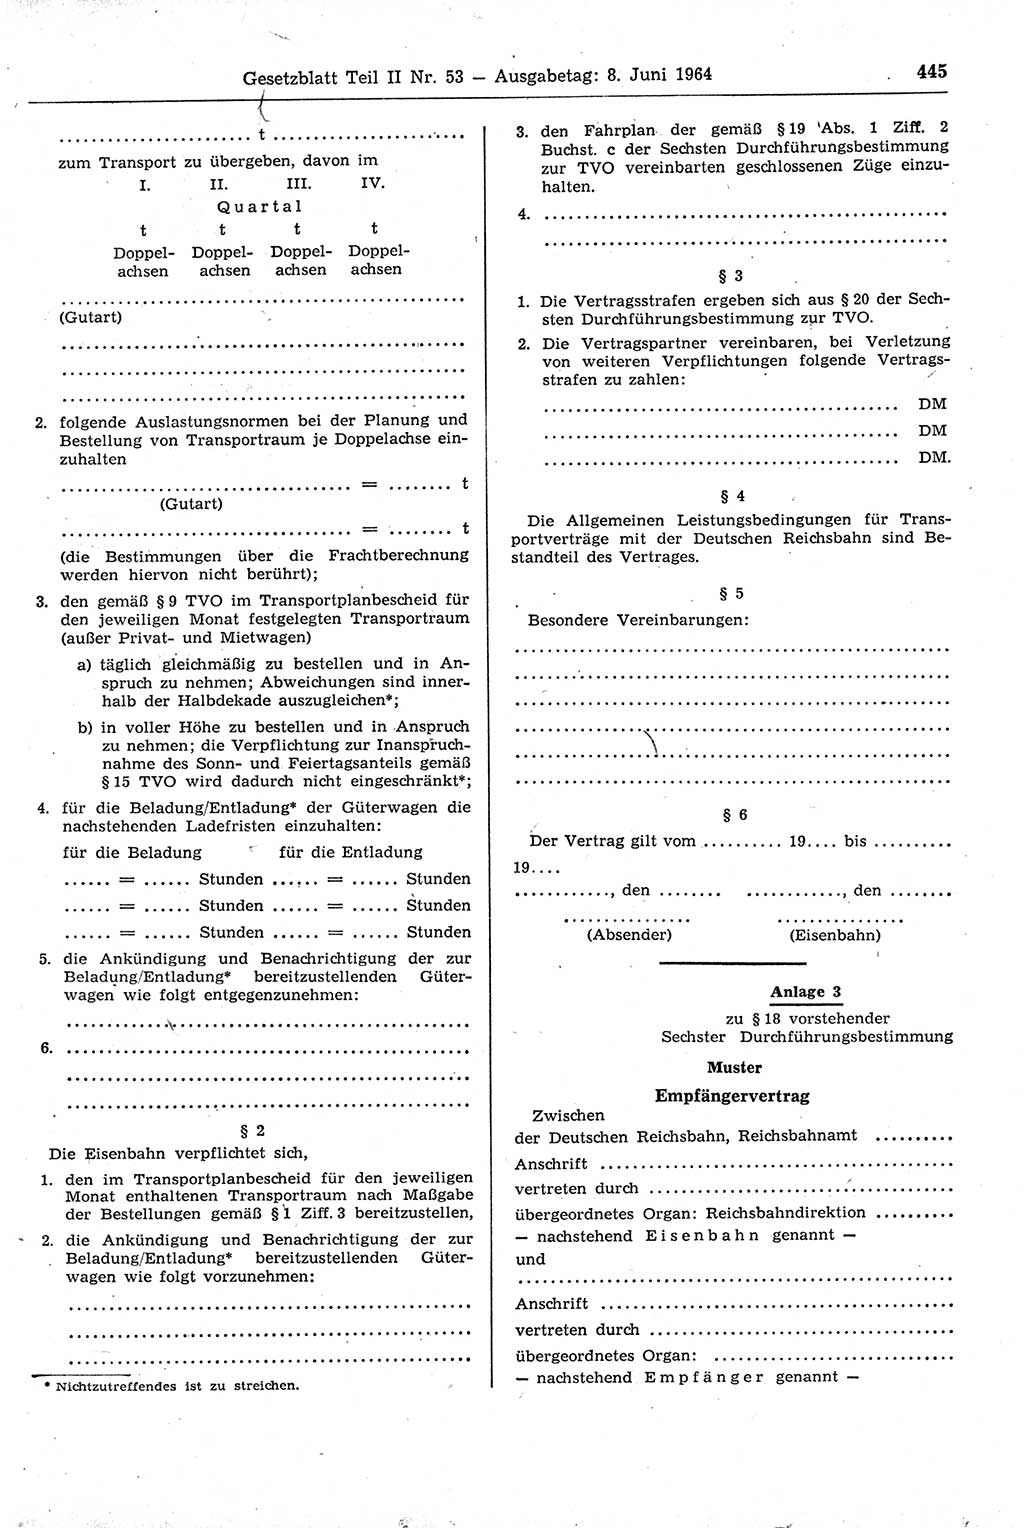 Gesetzblatt (GBl.) der Deutschen Demokratischen Republik (DDR) Teil ⅠⅠ 1964, Seite 445 (GBl. DDR ⅠⅠ 1964, S. 445)